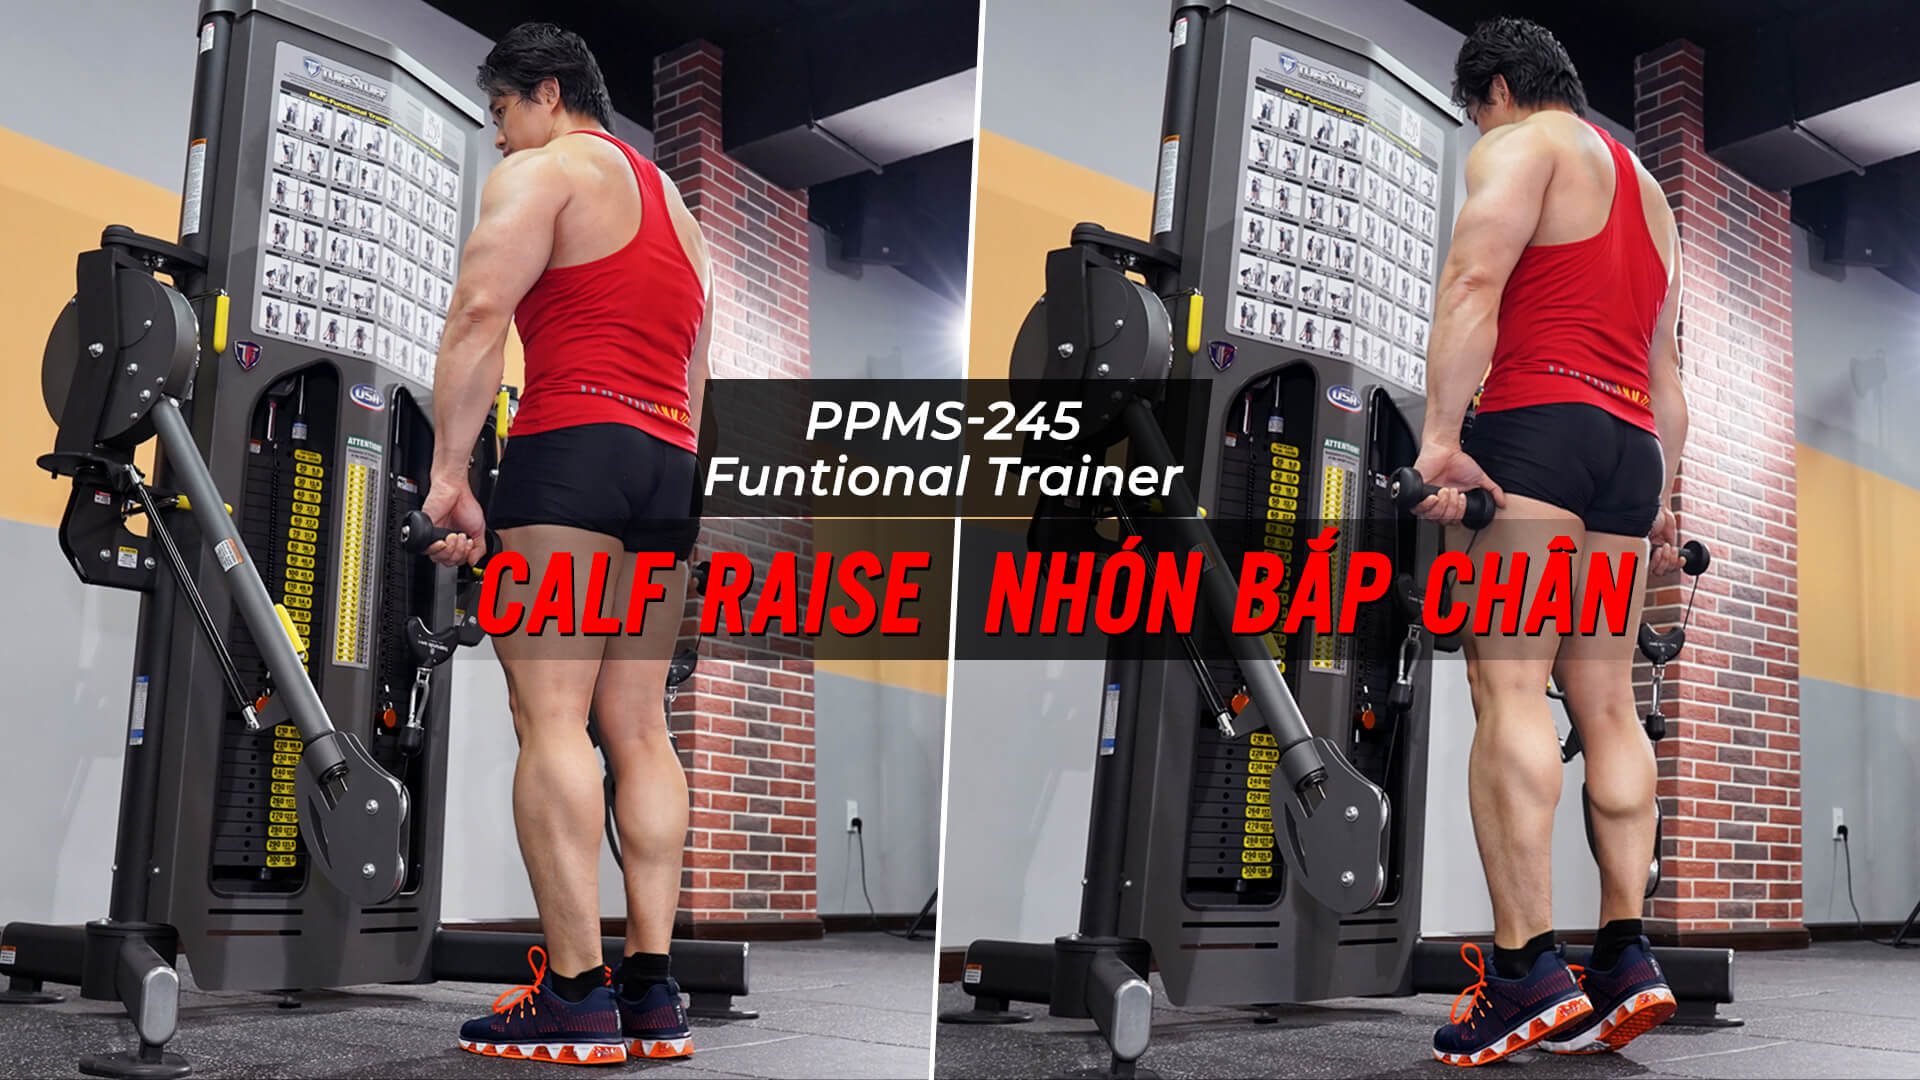 Calf Raise - Cách tập nhón bắp chân với Functional Trainer (PPMS-245)